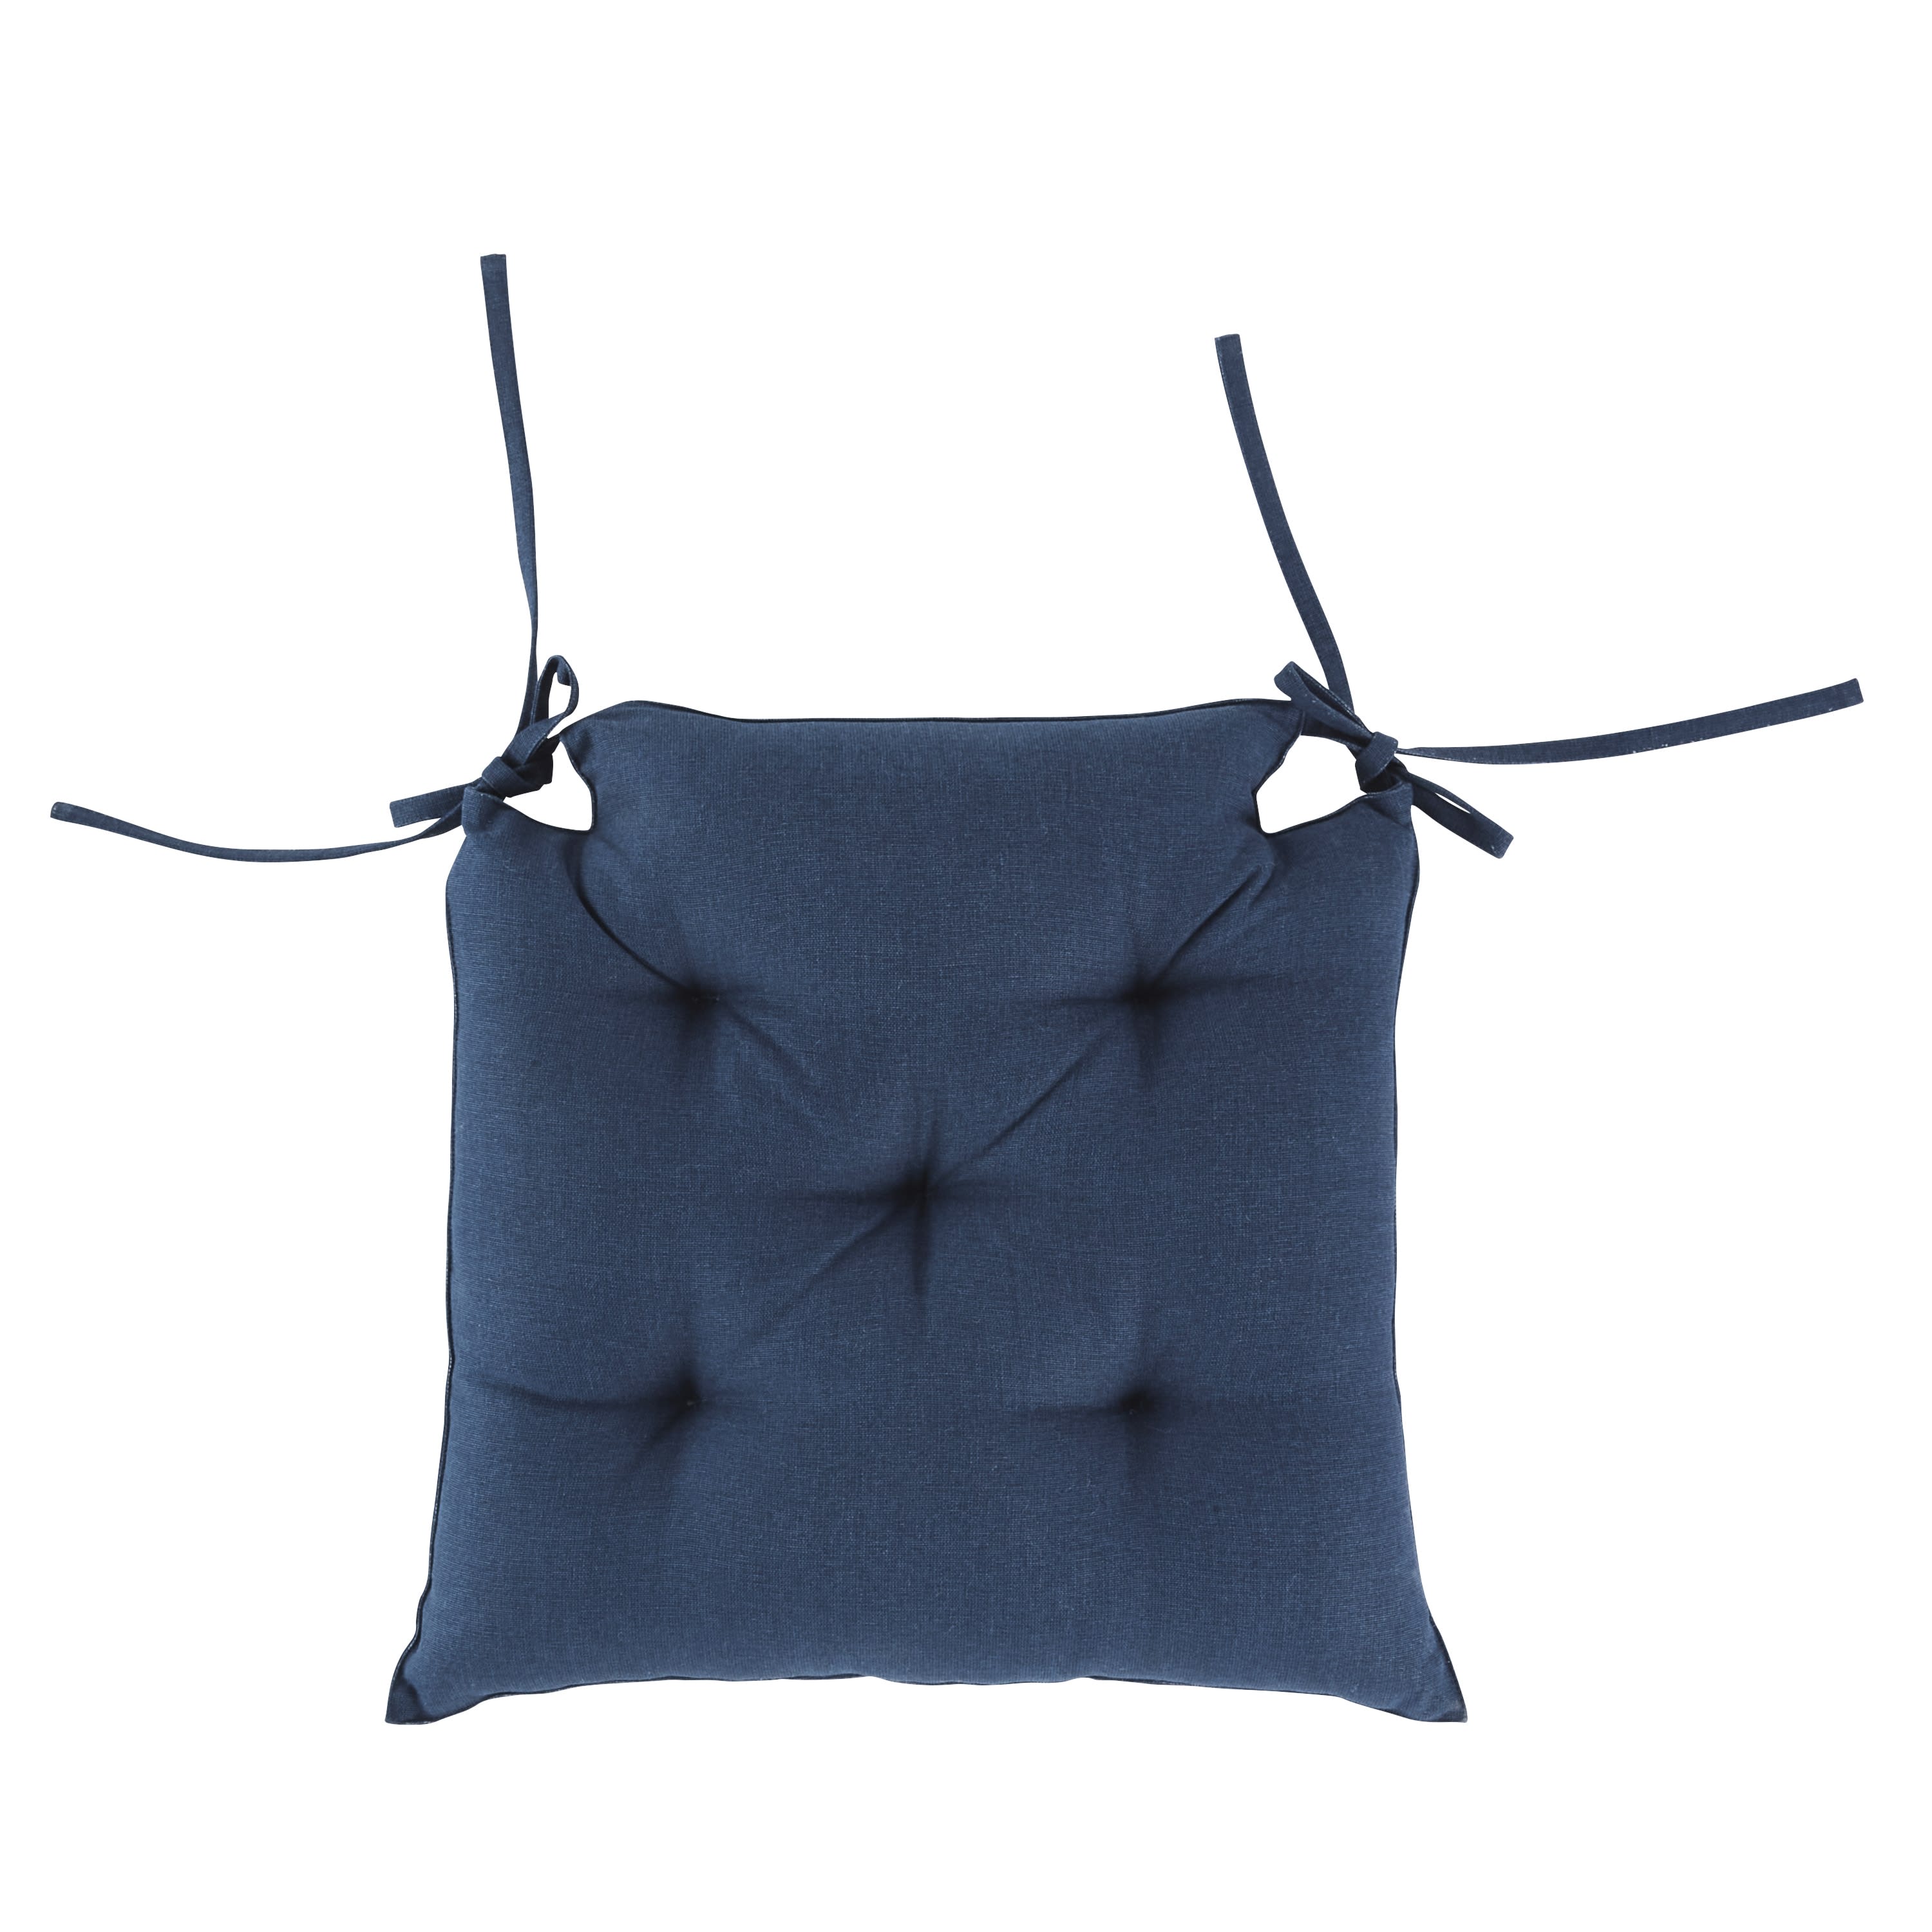 Cuscino per sedia da esterno in cotone blu navy 40x40 cm ROMMIE